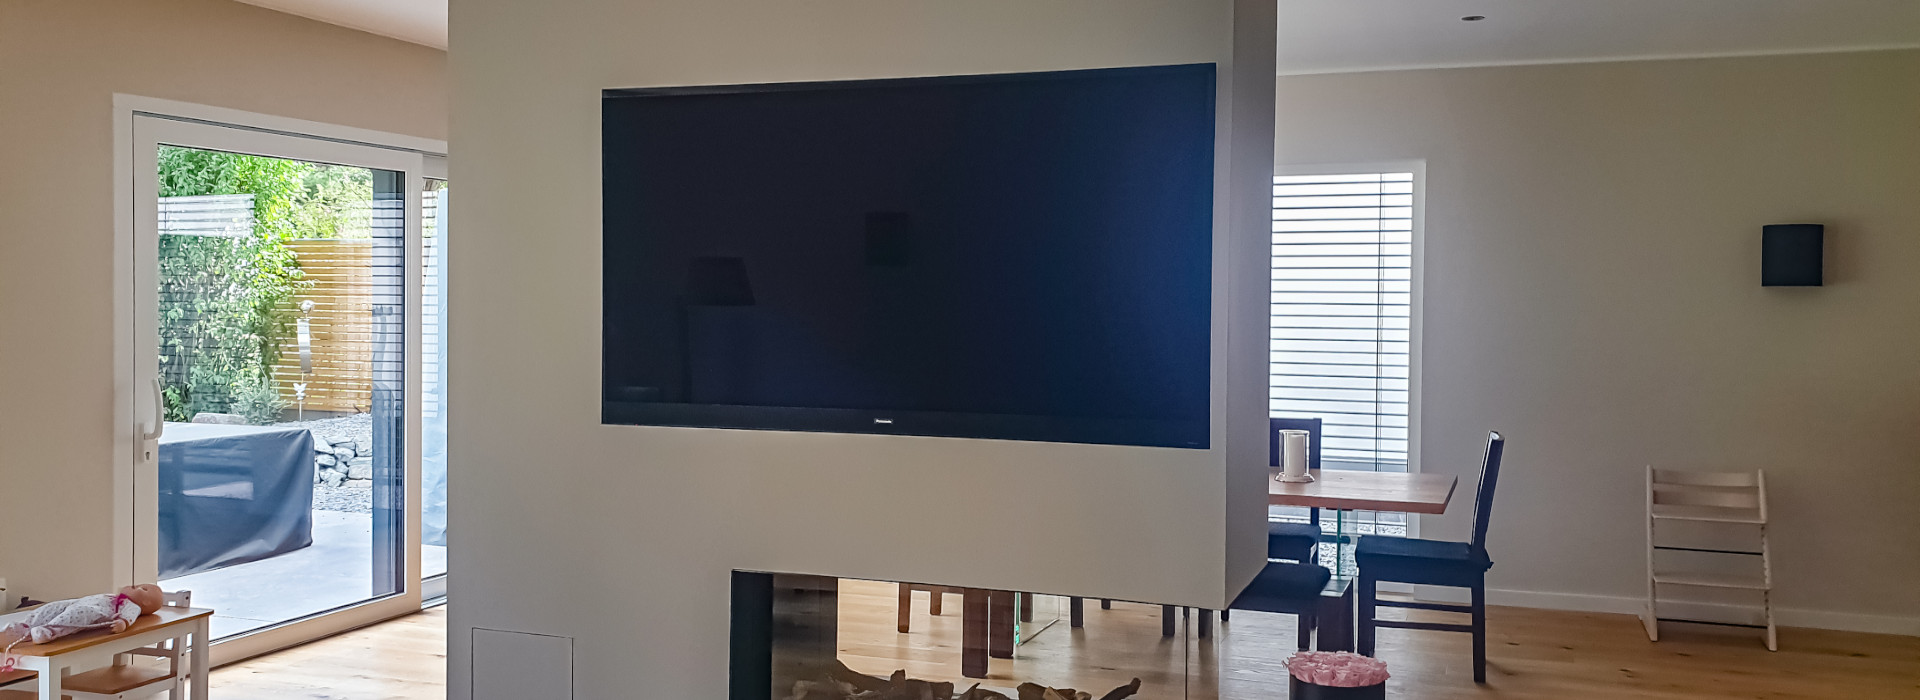 TV und Netzwerktechnik: Das Bild zeigt einen Fernseher, der flach in die Wand über einem Kaminofen eingelassen ist